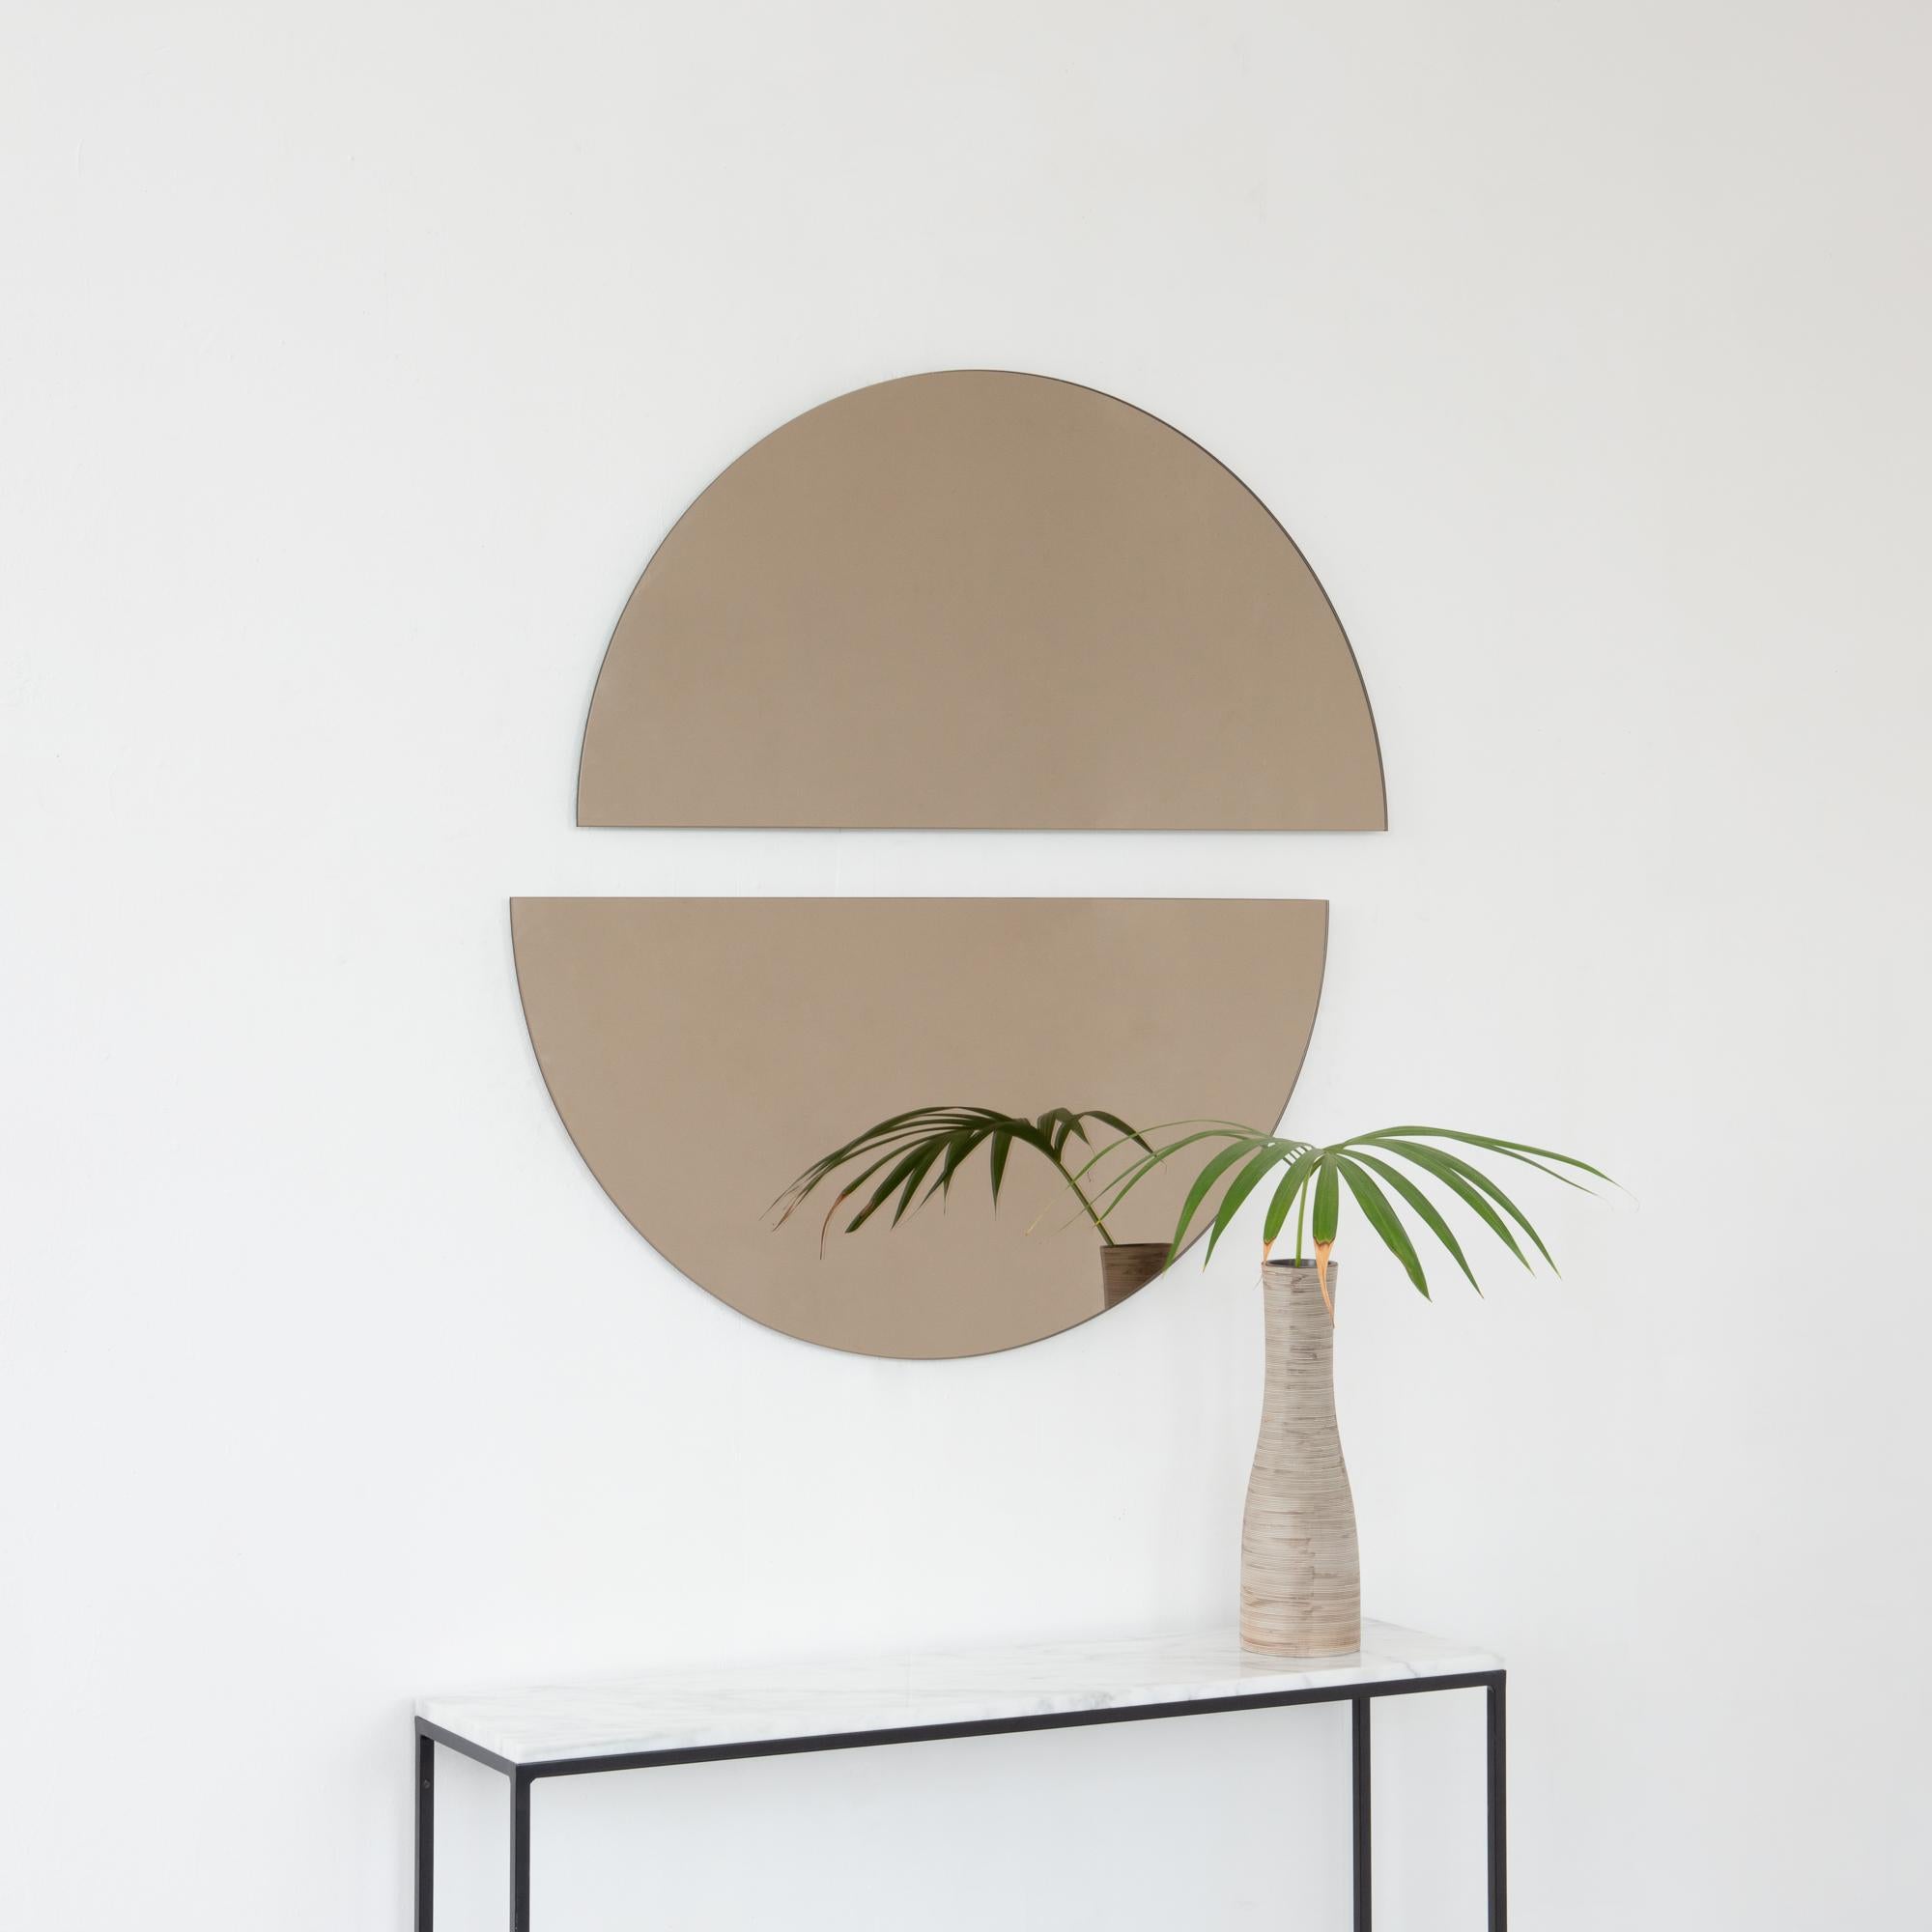 Set aus zwei minimalistischen halbmondförmigen Luna™-Spiegeln in Bronze mit Schwebeeffekt. Ausgestattet mit einem hochwertigen und ausgeklügelten Aufhängesystem für eine flexible Installation in 4 verschiedenen Richtungen. Entworfen und hergestellt